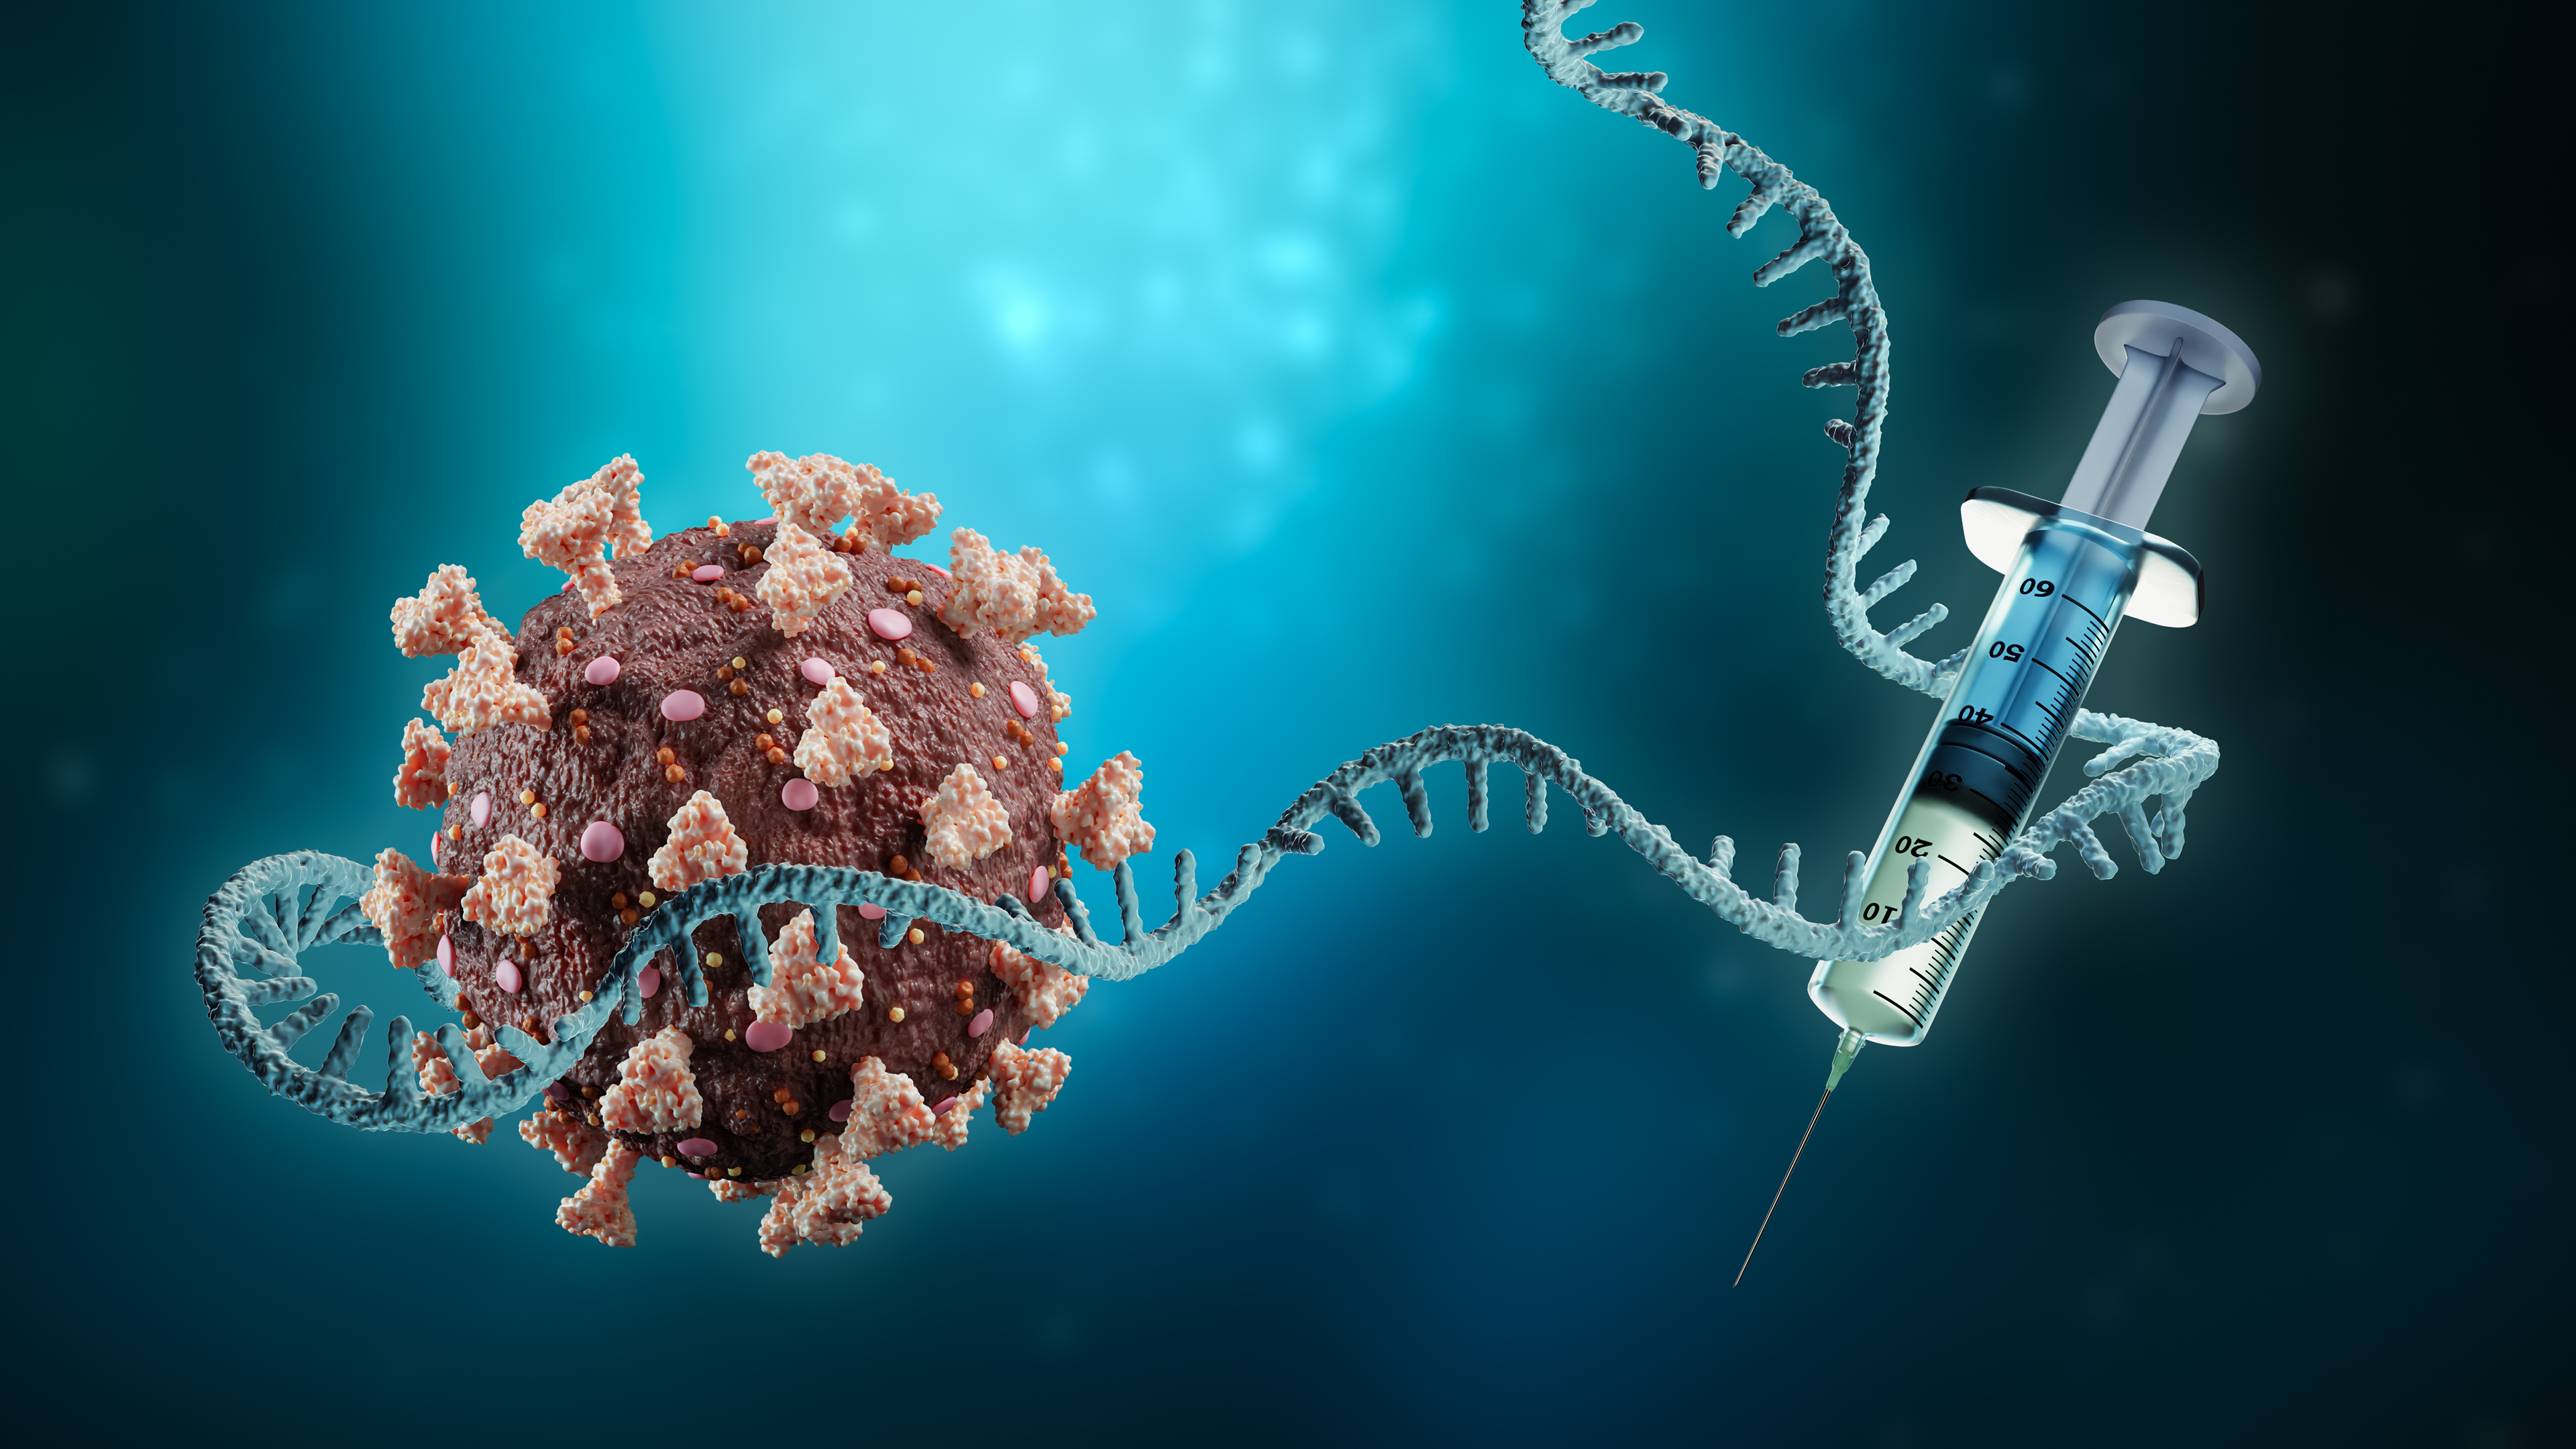 La vaccination avec la technologie de l'ARN messager suscite toujours beaucoup d'interrogations. © Matthieu, Adobe Stock